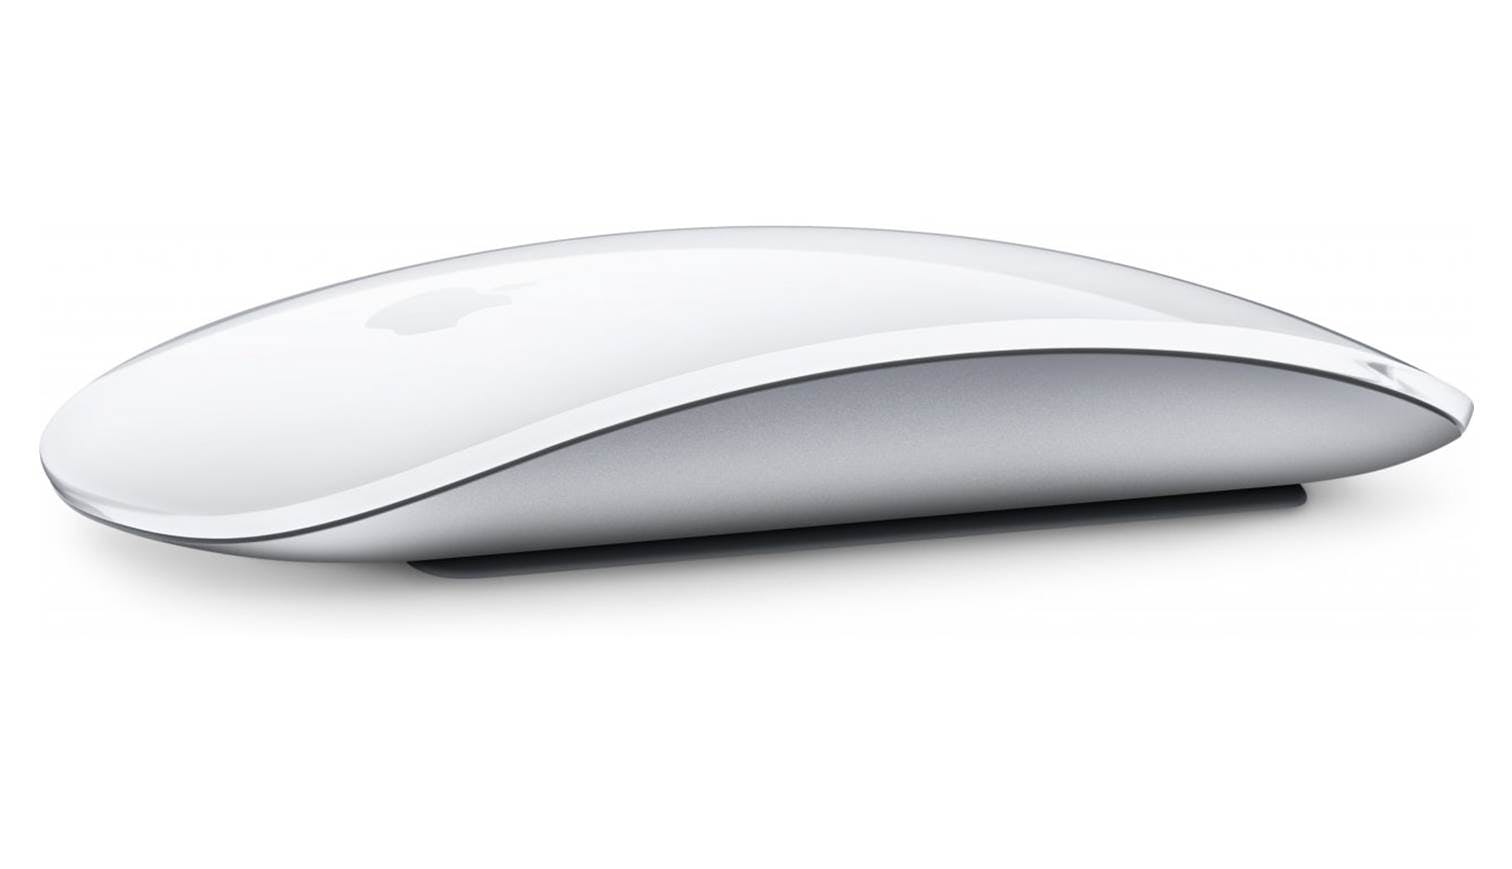 7 полезных аксессуаров для вашего MacBook Pro (apple magic mouse 2 439815.6)